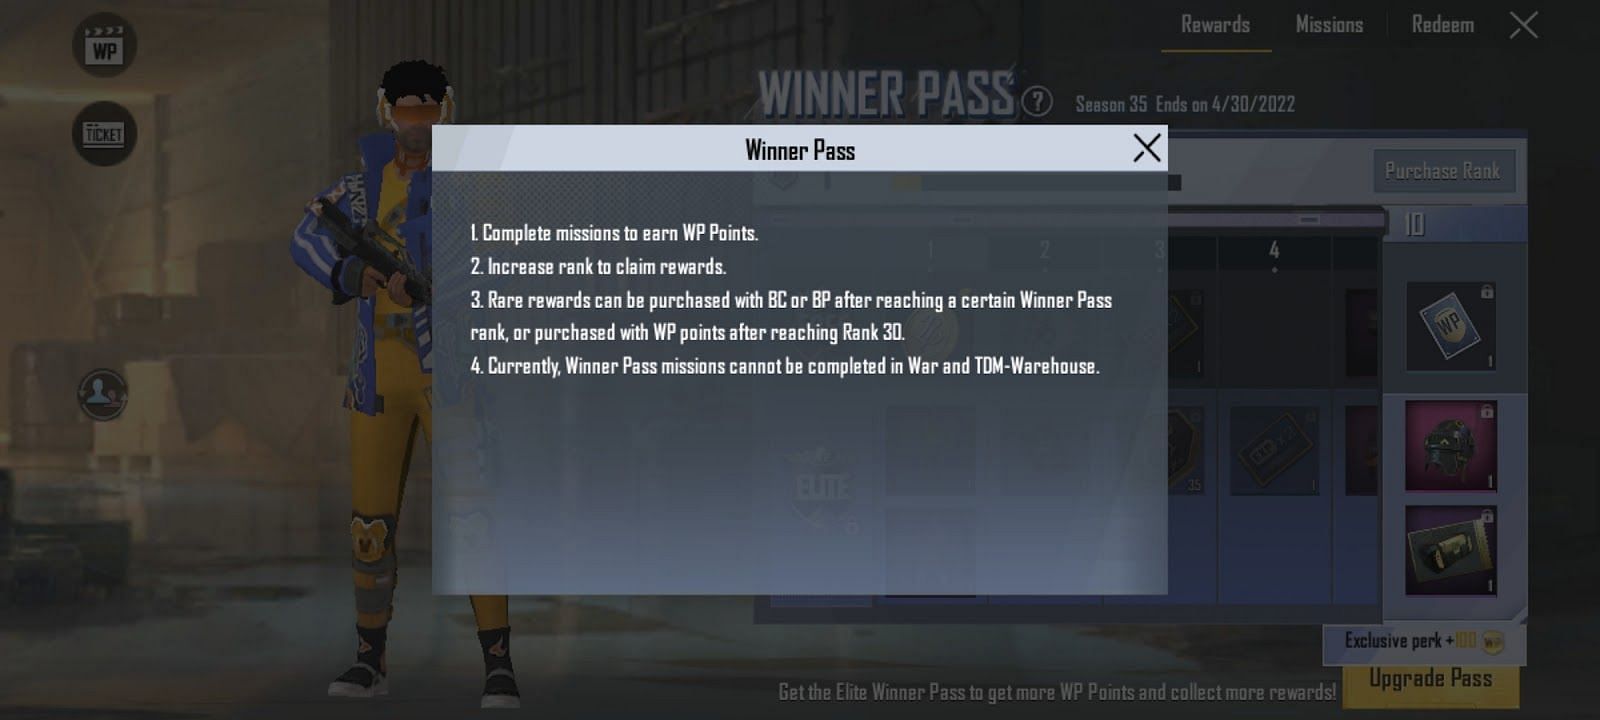 Obtaining rewards using Winner Pass (Image via Krafton)